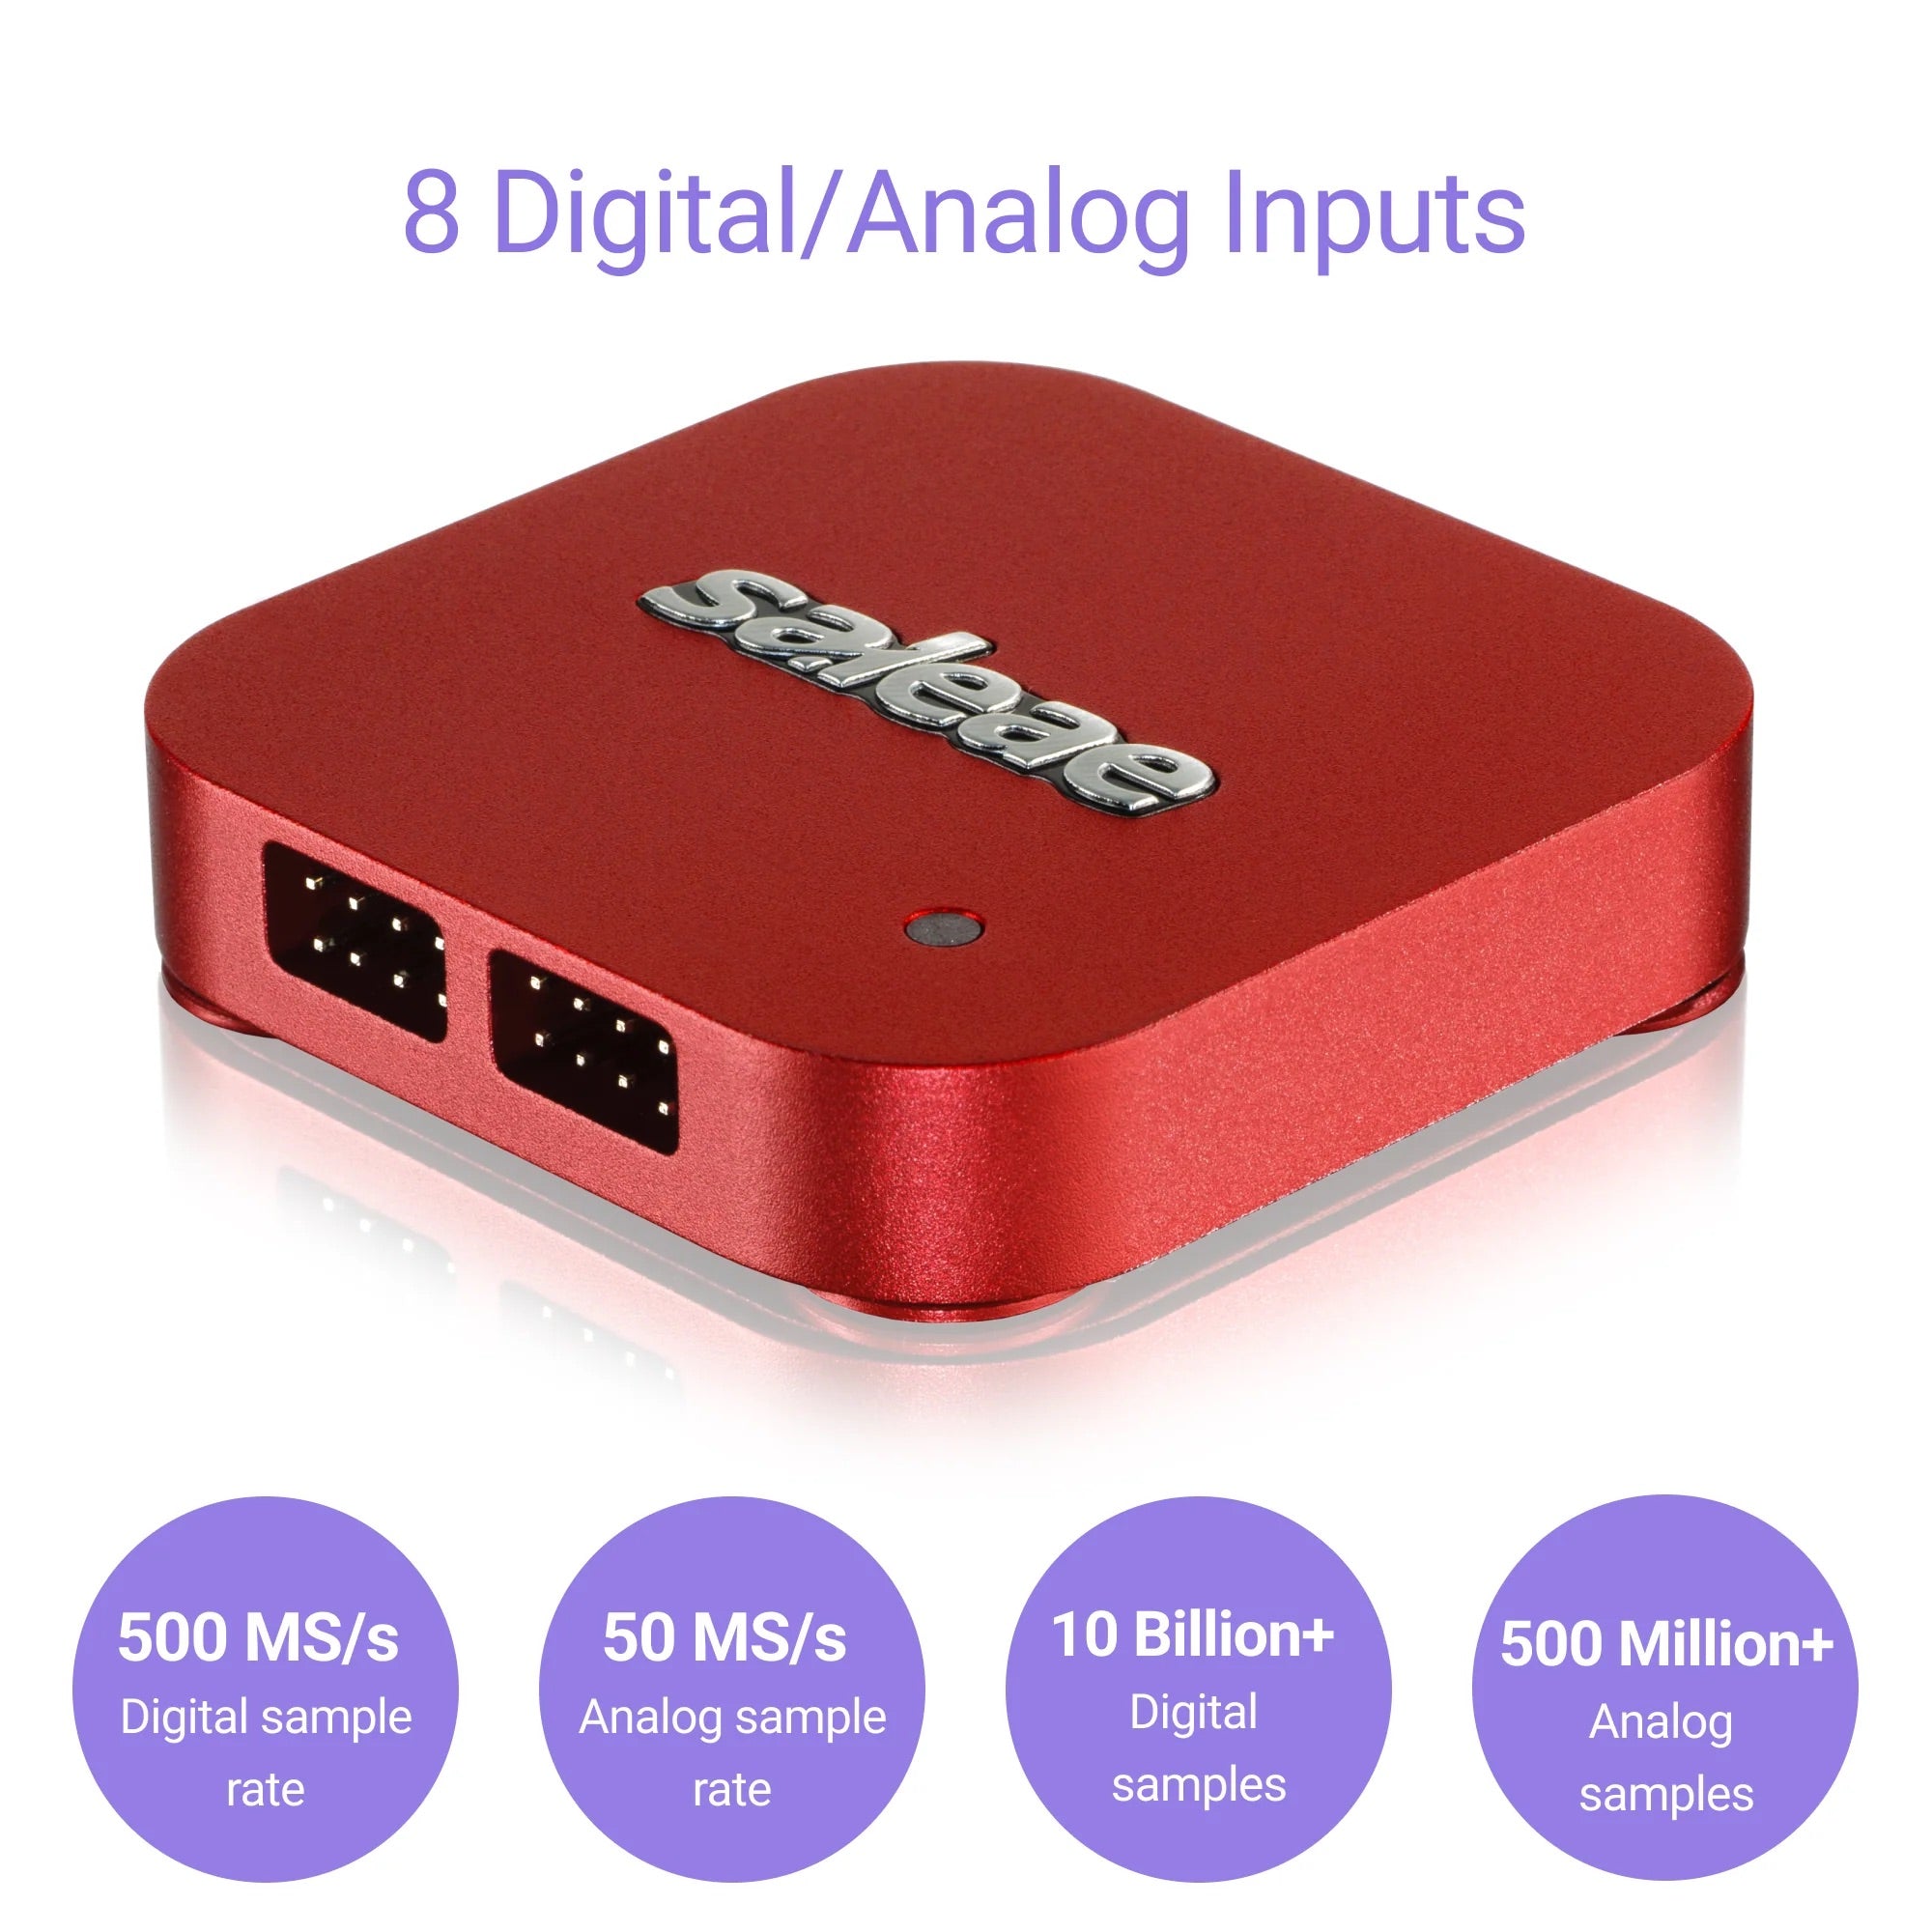 Saleae Logic Pro 8 - USB Logic Analyzer - Red